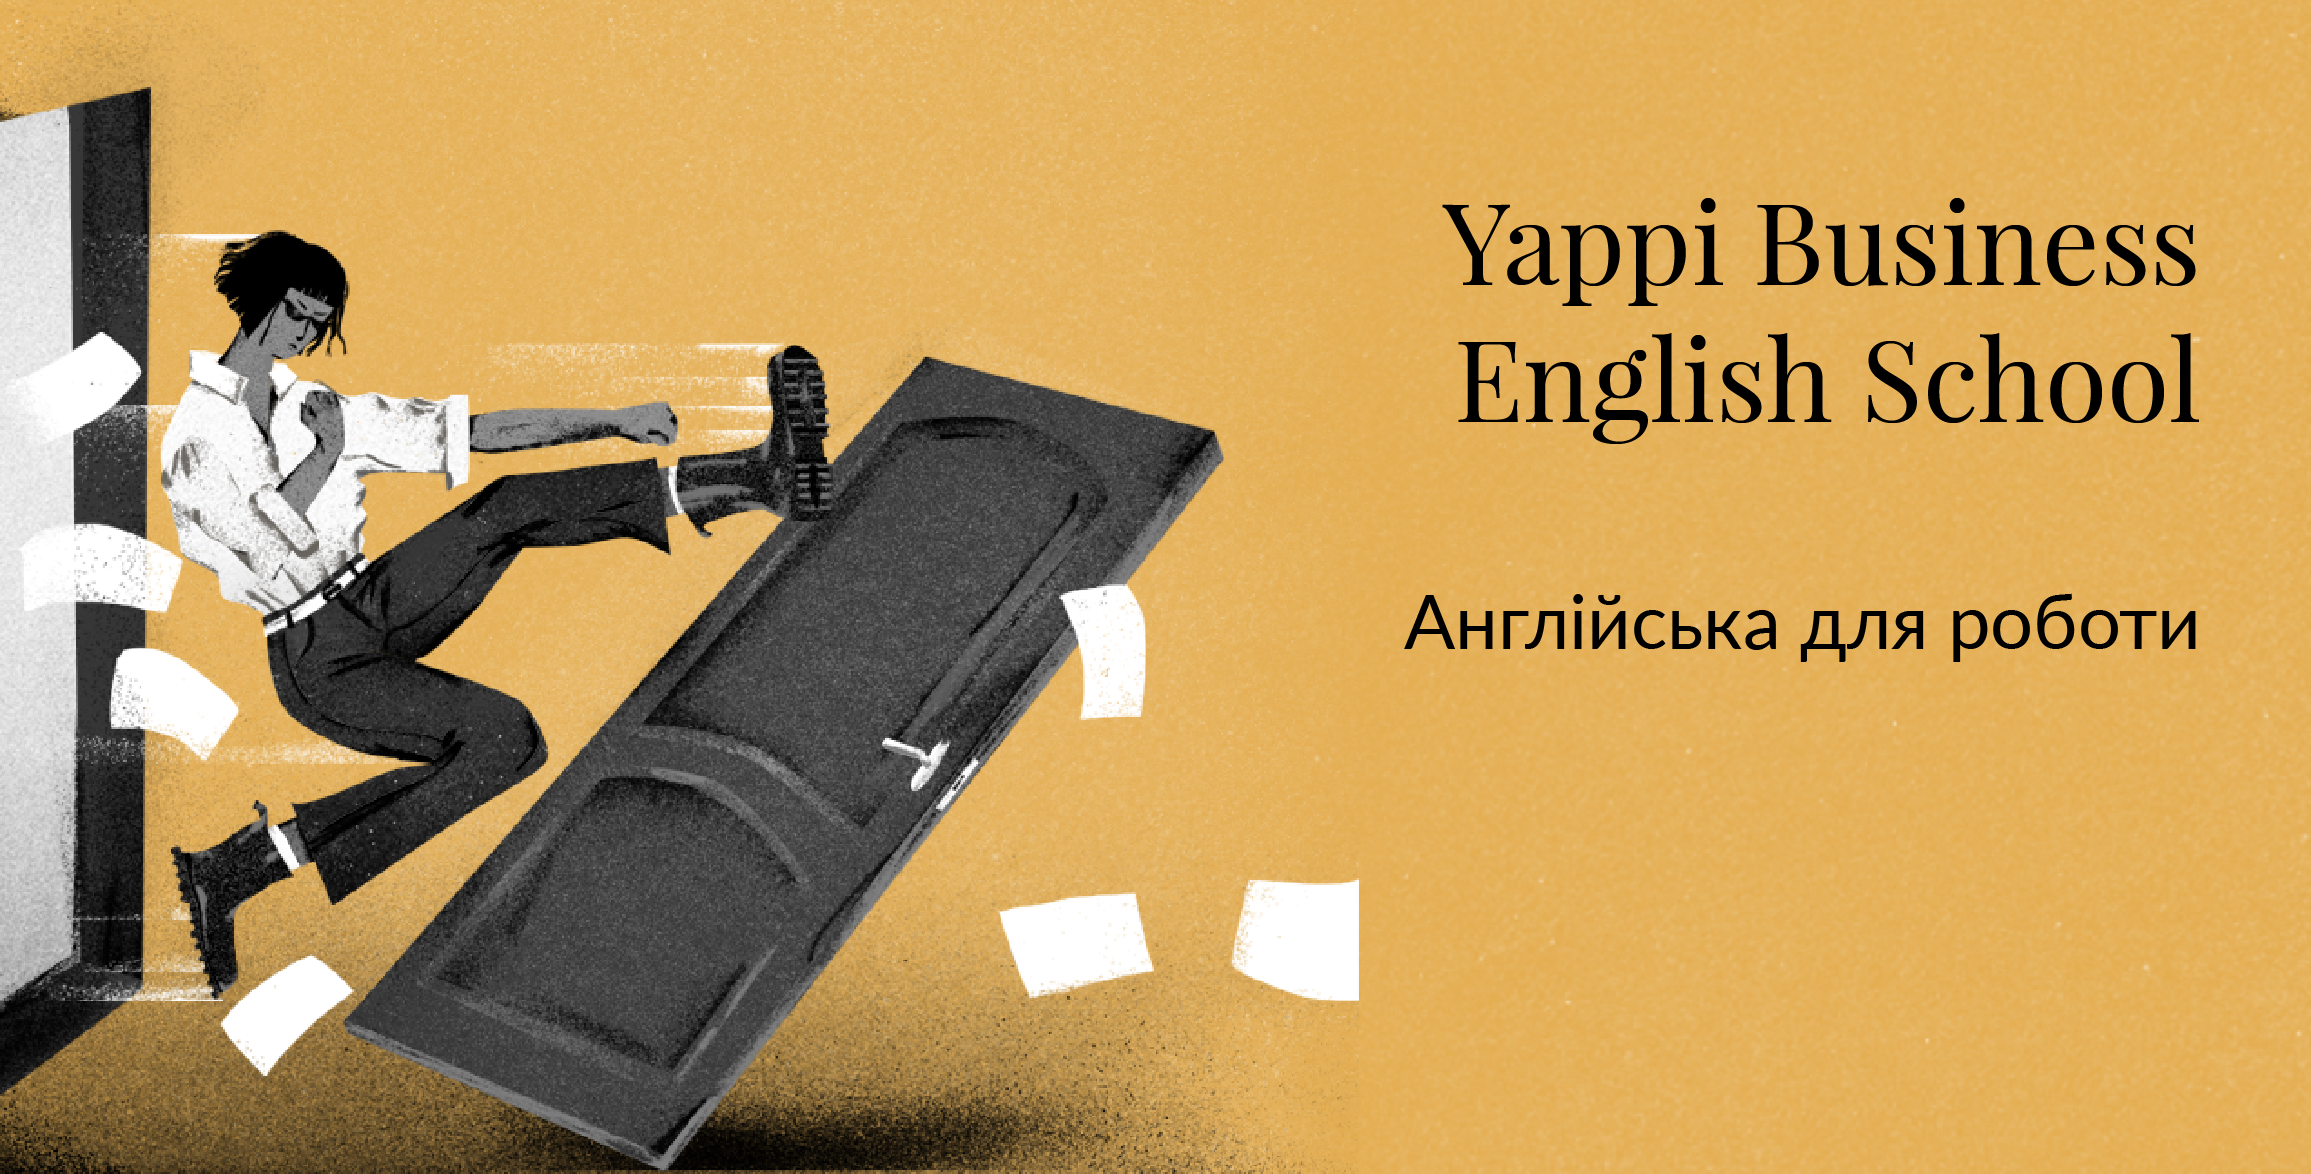 Чем курсы английского языка Yappi отличаются от других школ?